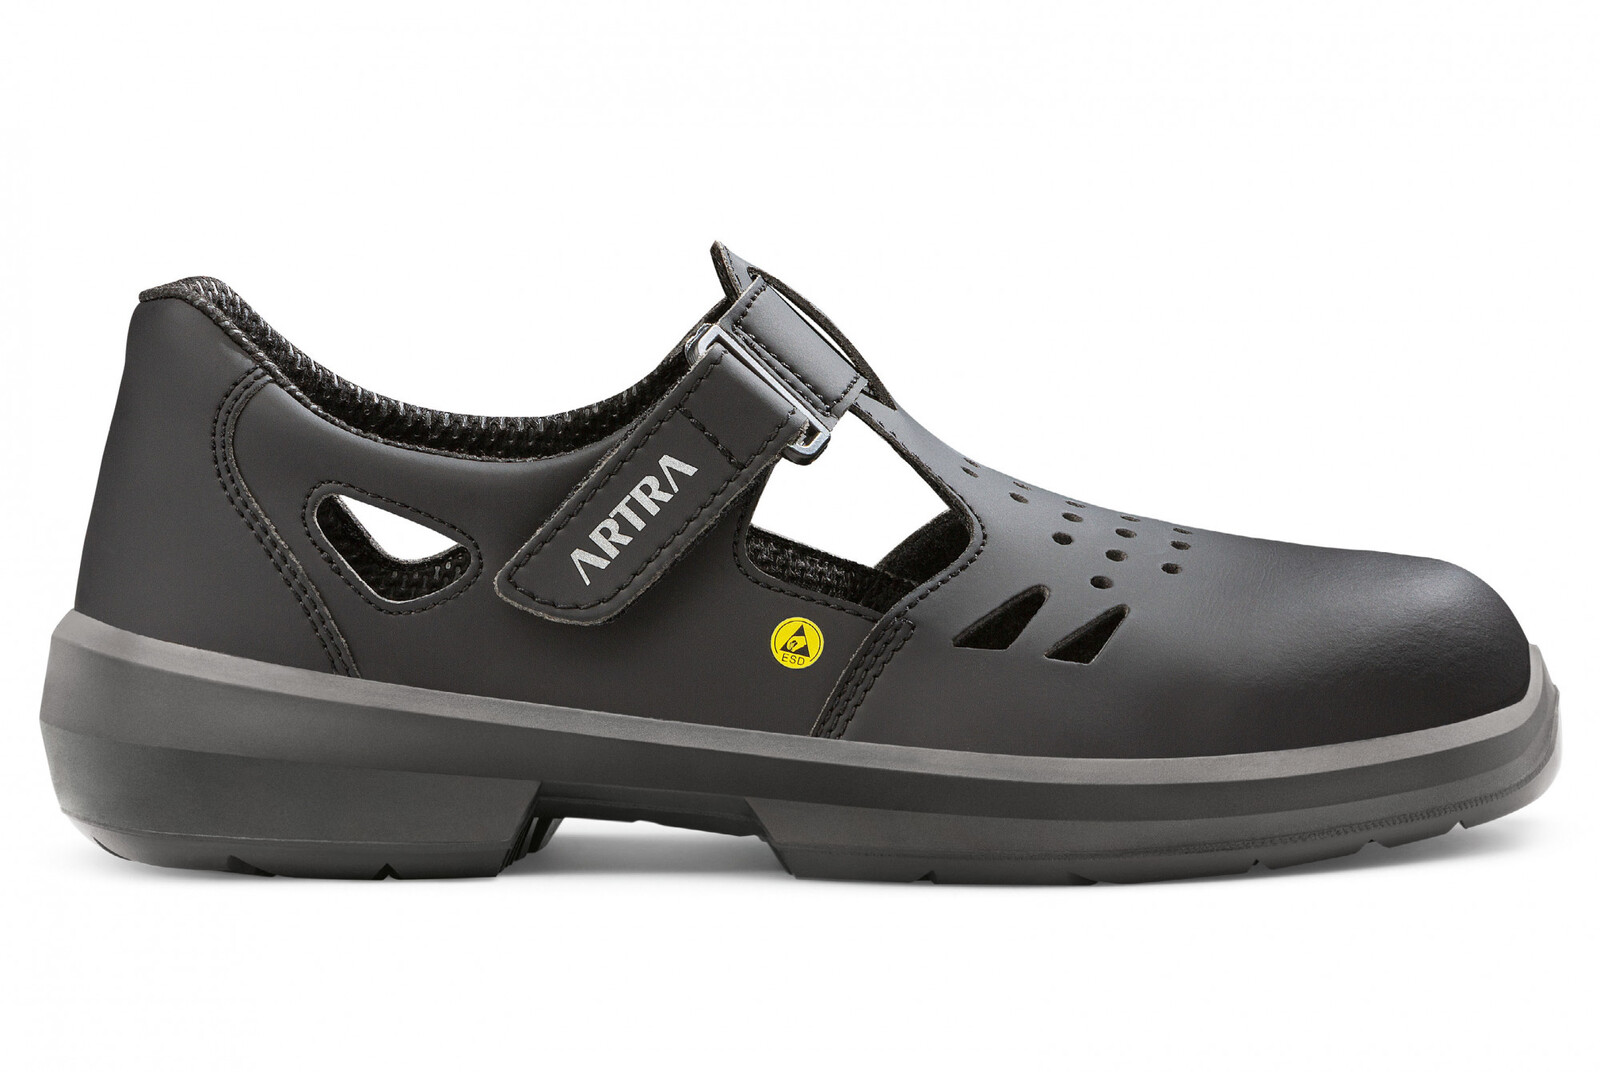 Bezpečnostné sandále Artra Armen 9008 6760 S1 SRC ESD MF - veľkosť: 37, farba: čierna